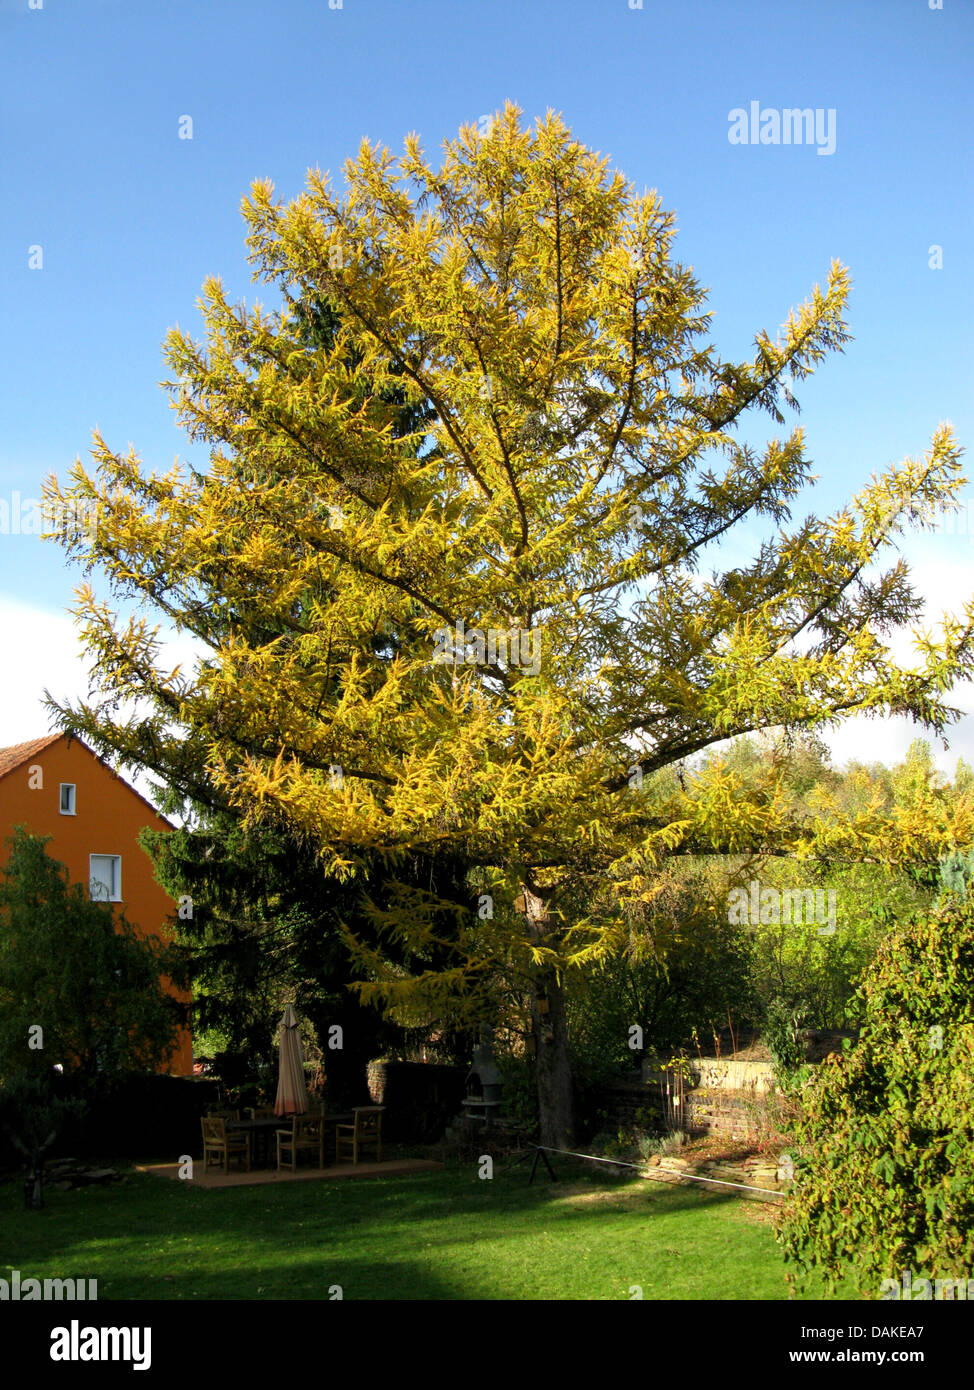 Mélèze (Larix kaempferi japonais), seul arbre en automne, Allemagne Banque D'Images